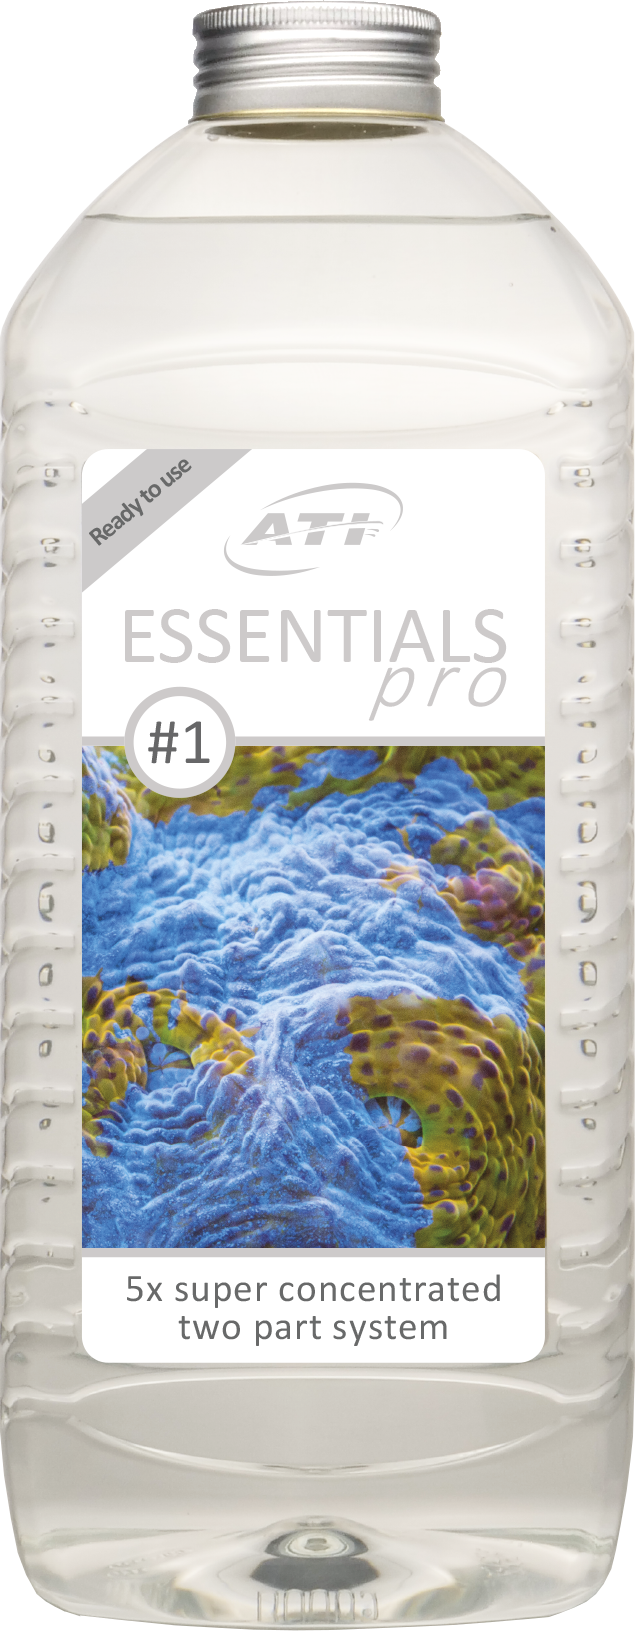 ATI Essentials Pro #1 2000ml